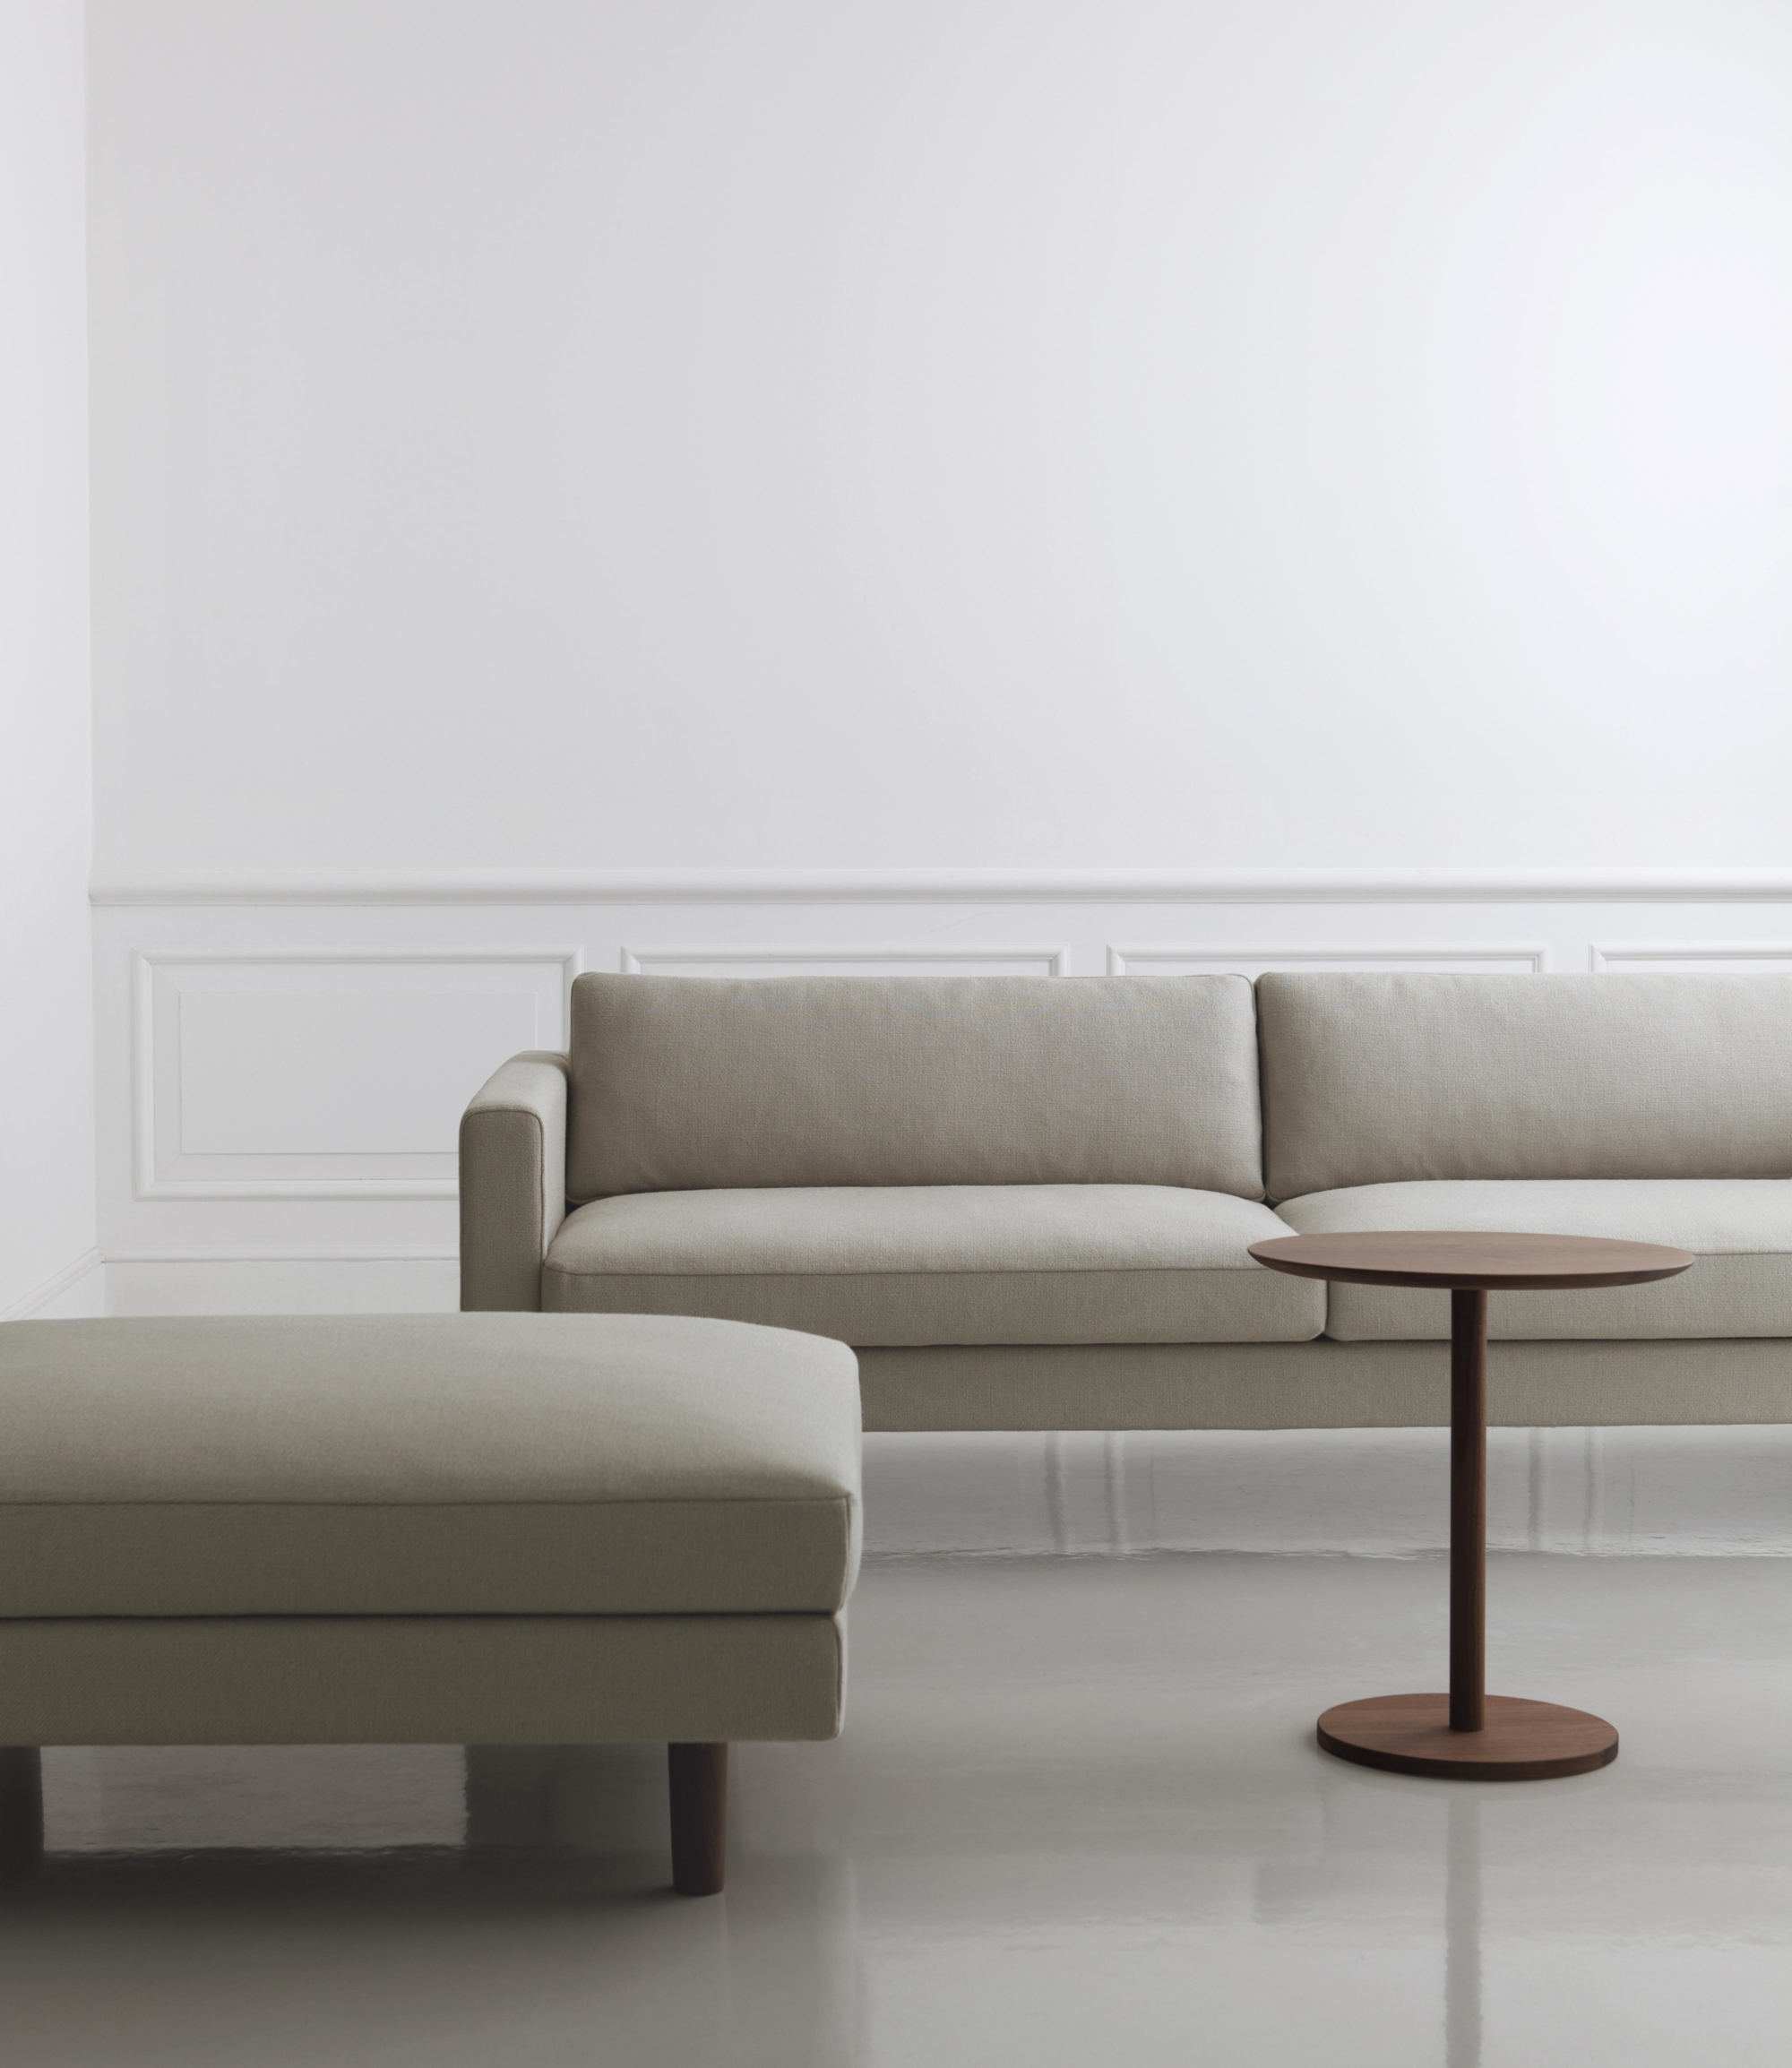 Hiroshima Sofa and Side Table - Naoto Fukasawa Design